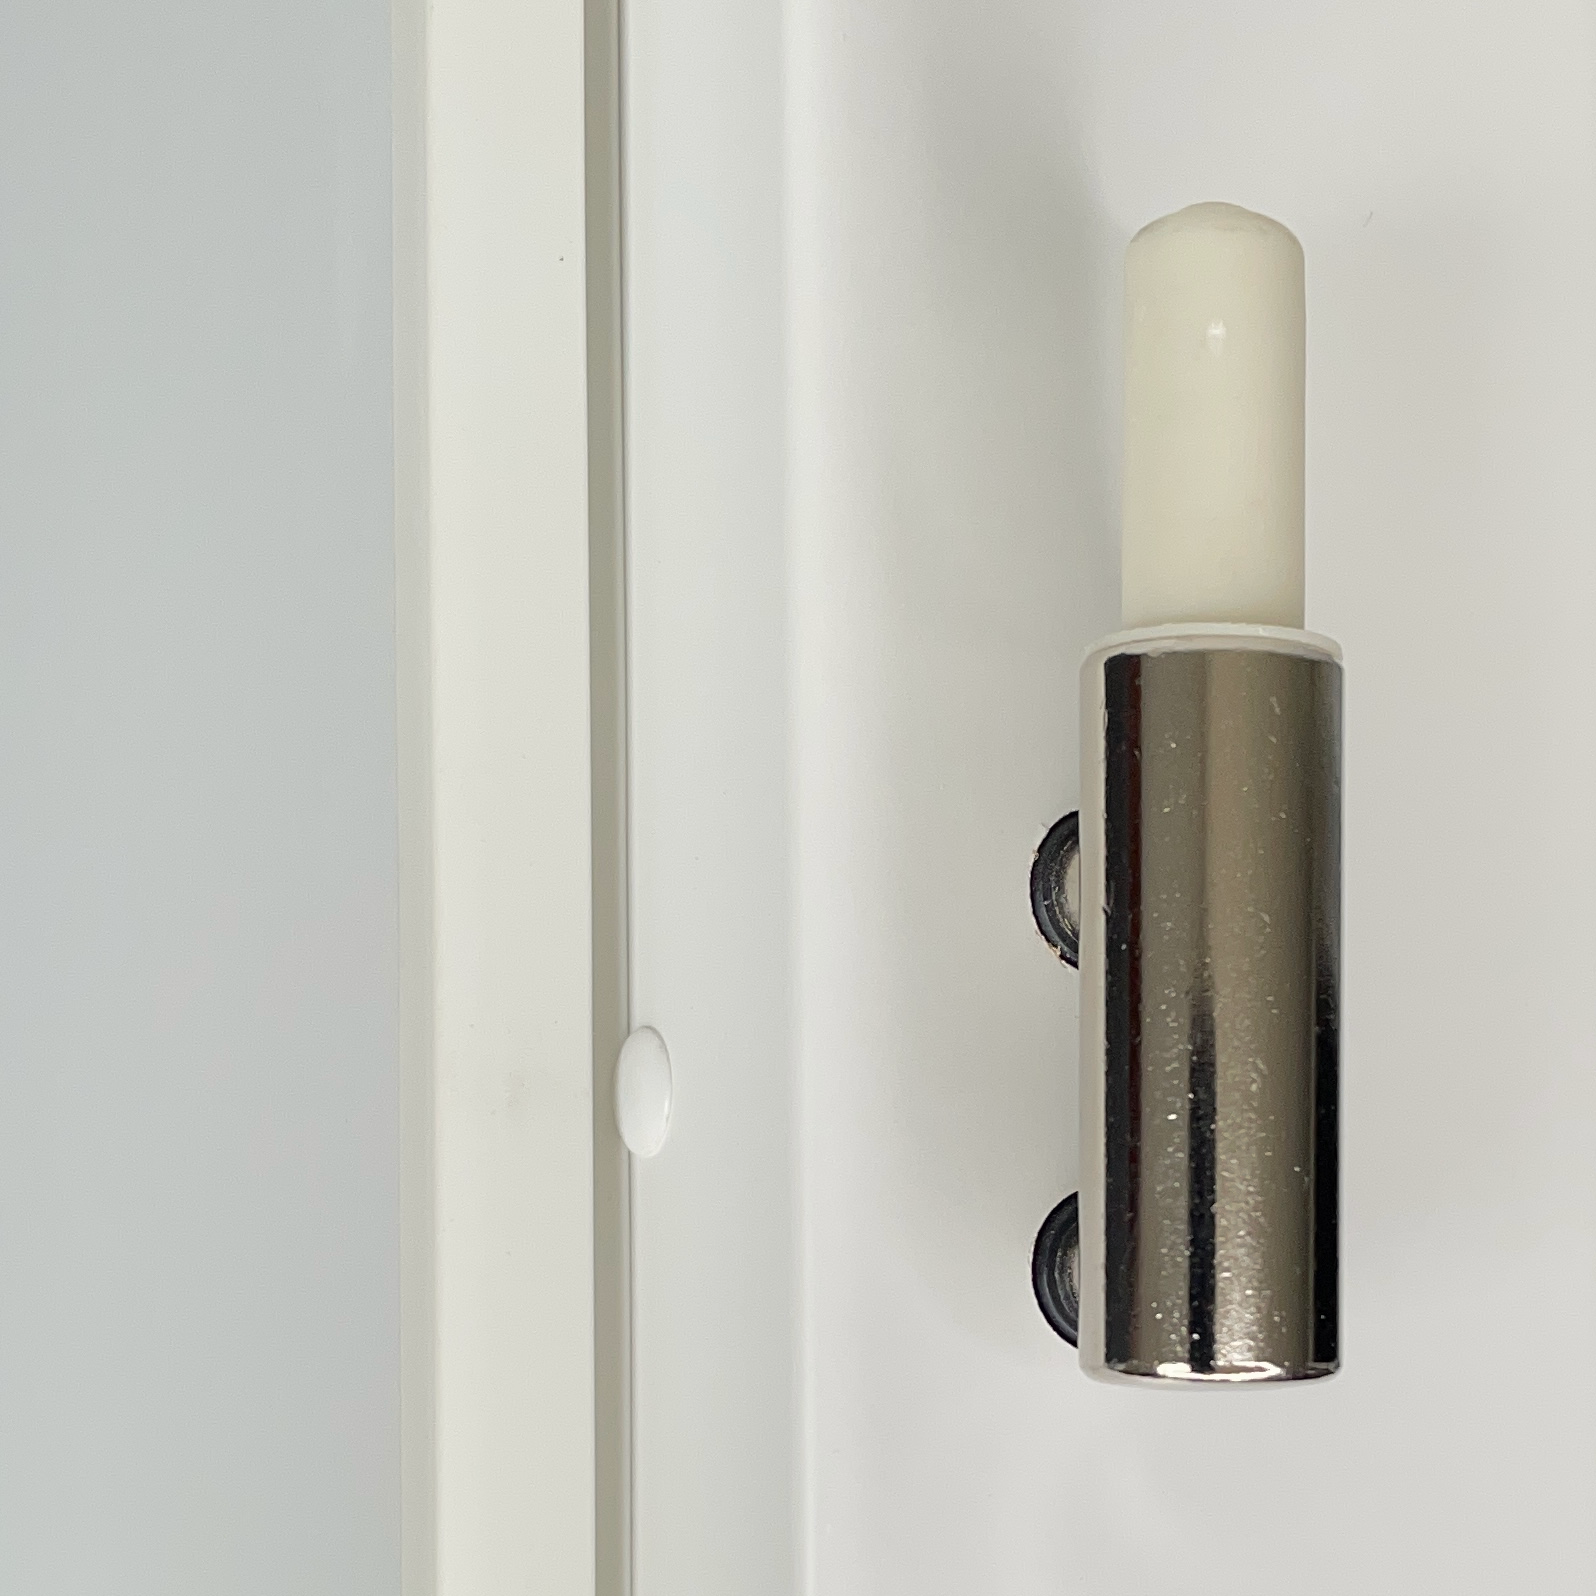 Zimmertür mit Zarge und Lichtausschnitt soft-weiß 2 Kassetten Schweifbogen Eckkante - Modell Stiltür KS21LA